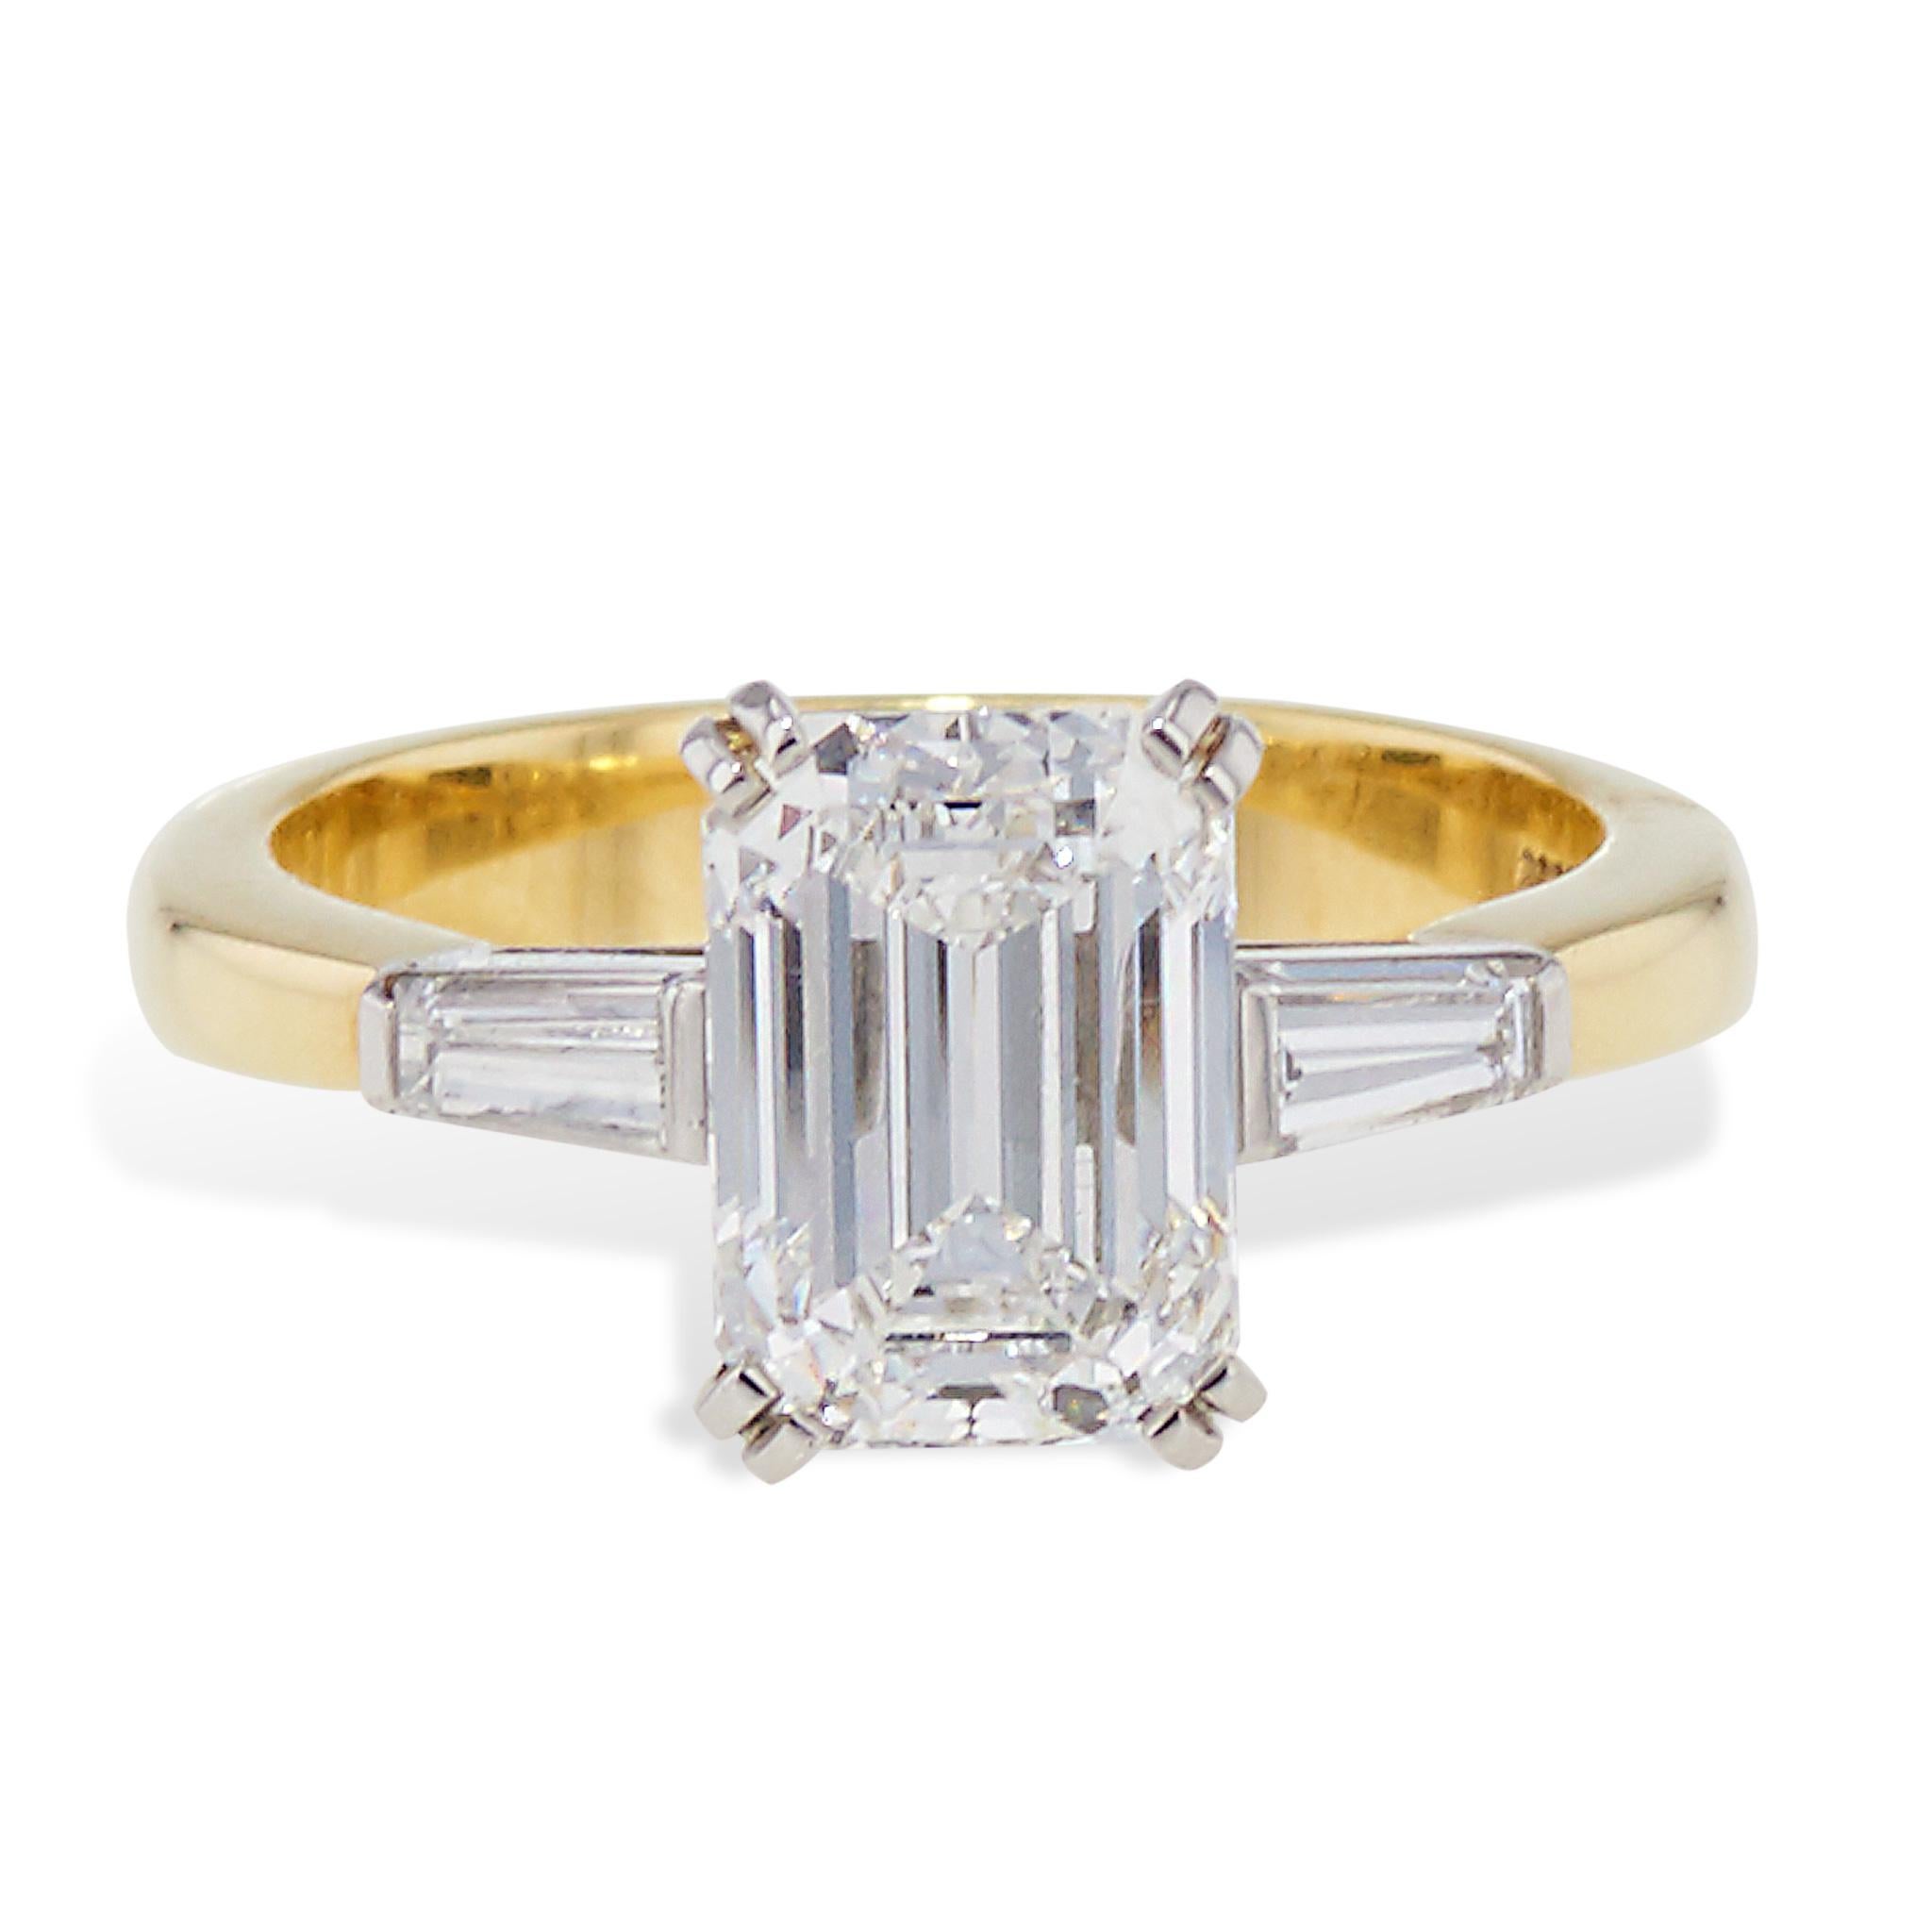 2 carat emerald-cut diamond ring tiffany